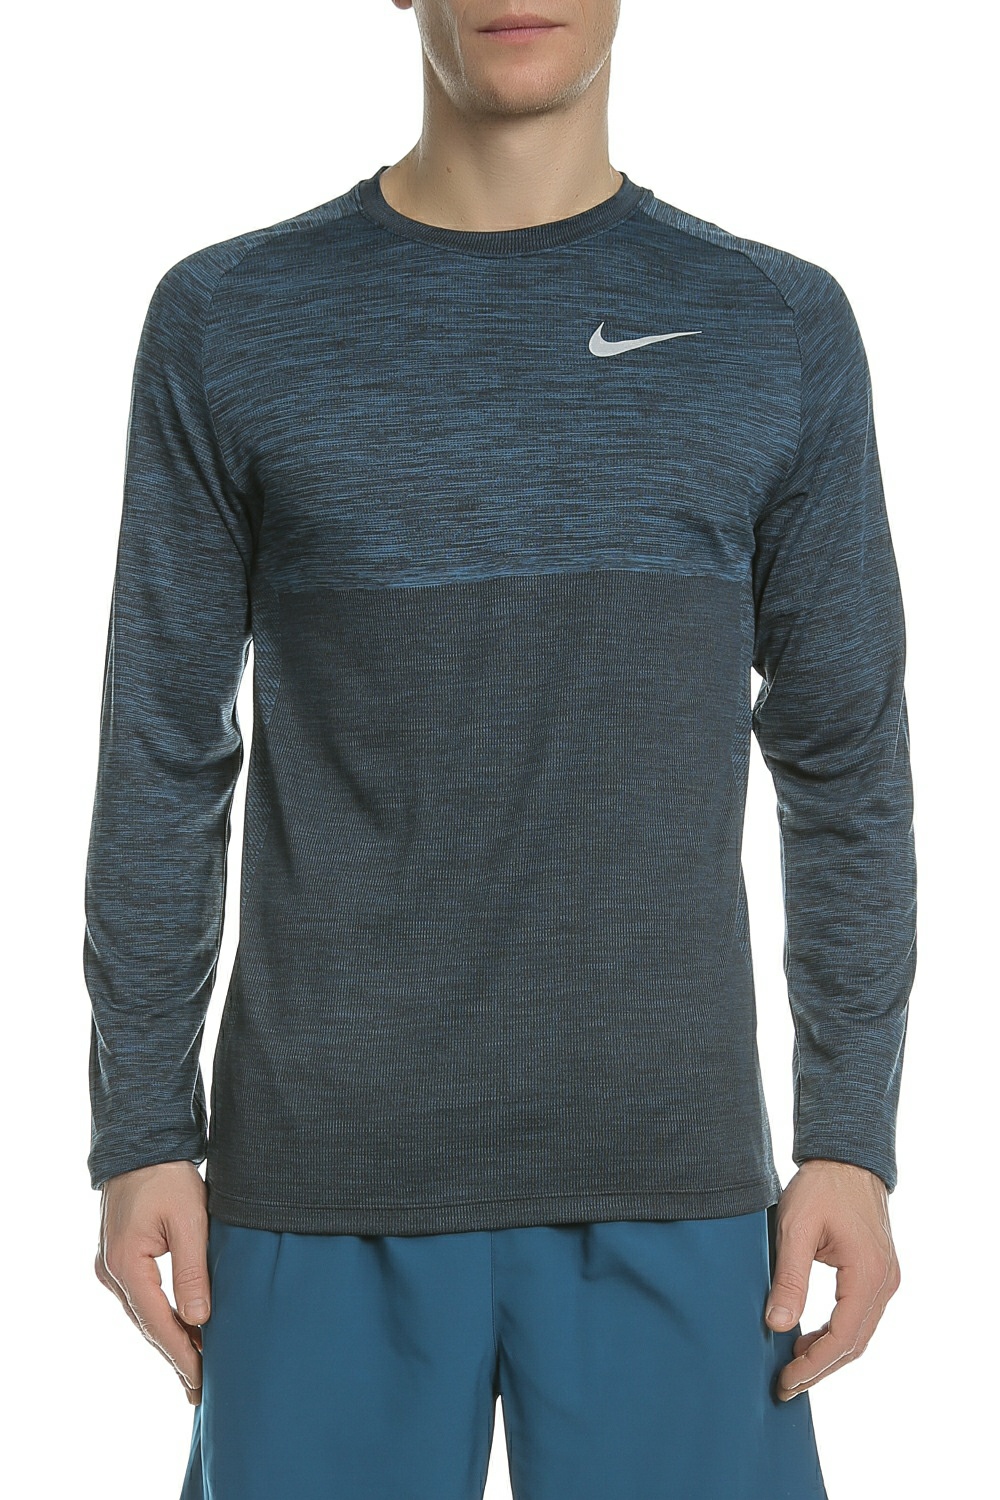 Ανδρικά/Ρούχα/Αθλητικά/Φούτερ-Μακρυμάνικα NIKE - Ανδρική μακρυμάνικη μπλούζα Nike DRY MEDALIST μπλε